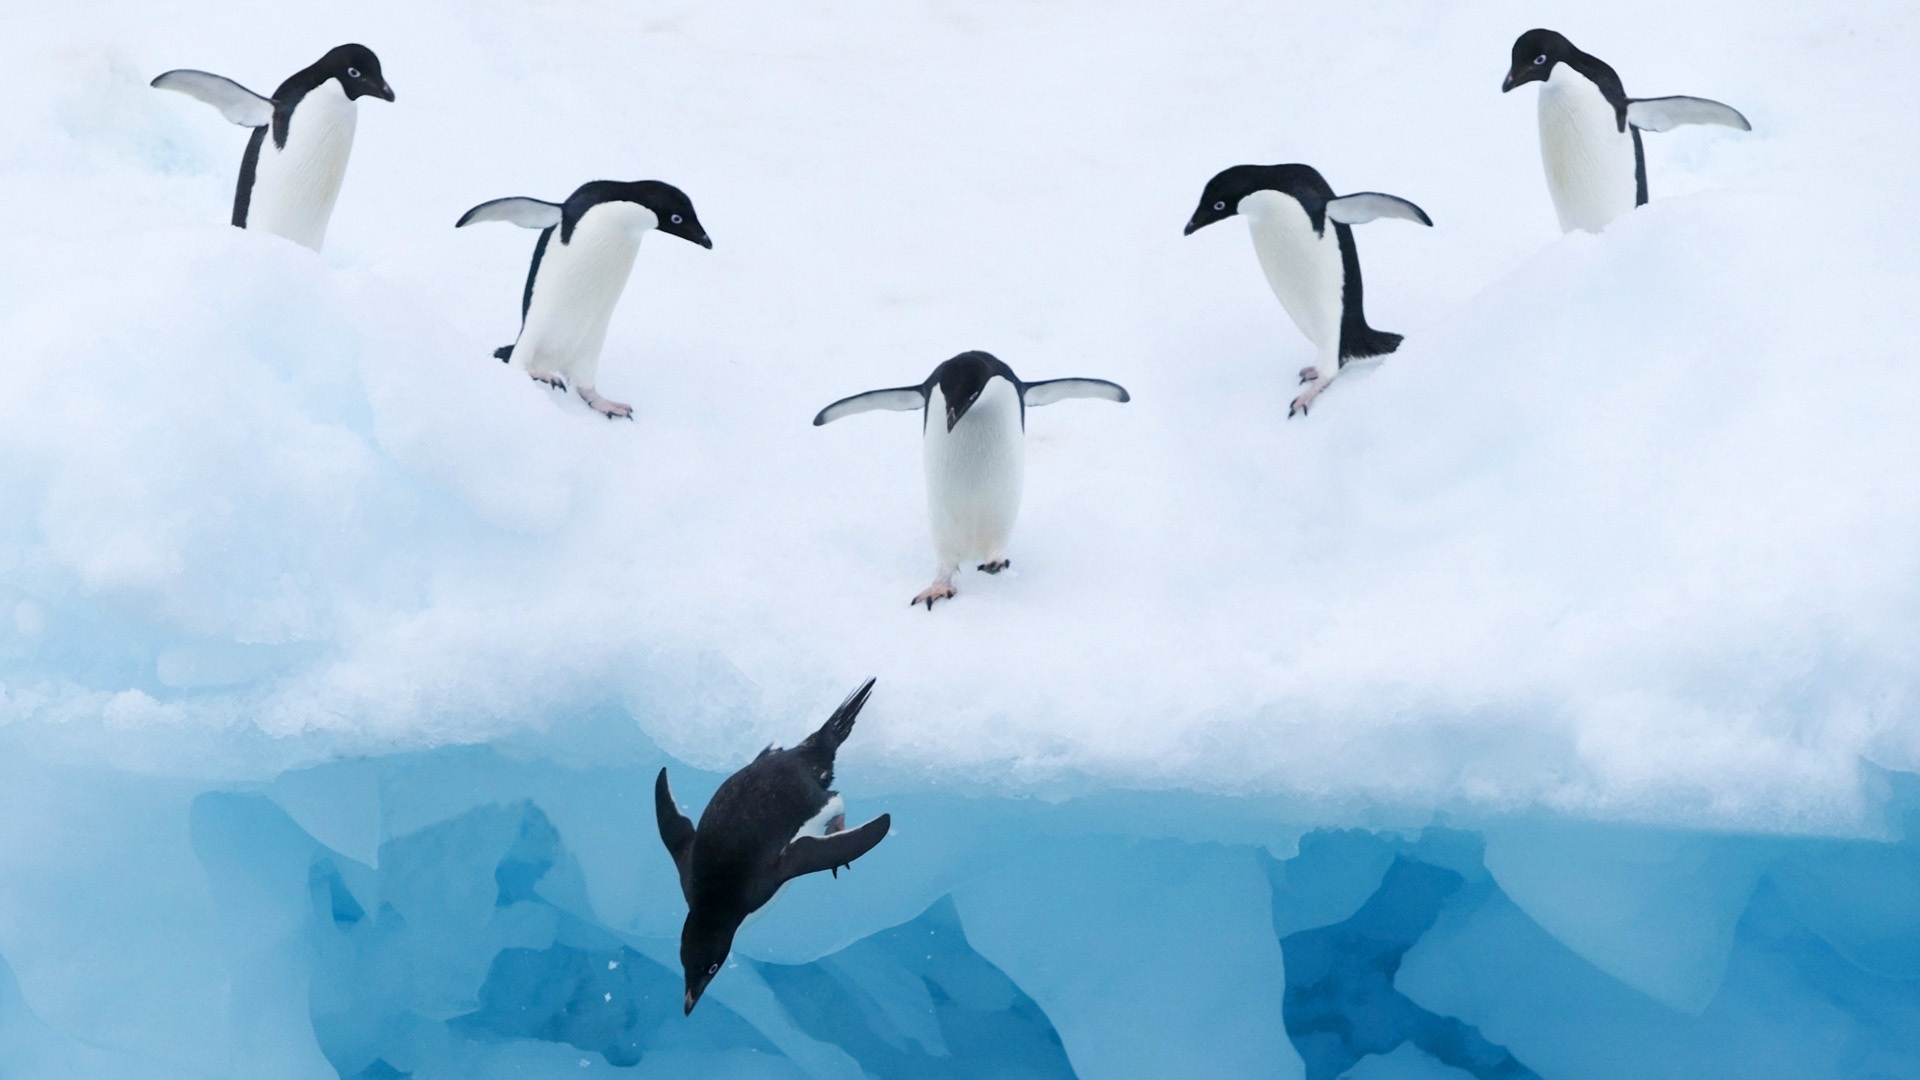 南极洲 雪 雪地 可爱企鹅桌面壁纸壁纸(动物静态壁纸) - 静态壁纸下载 - 元气壁纸